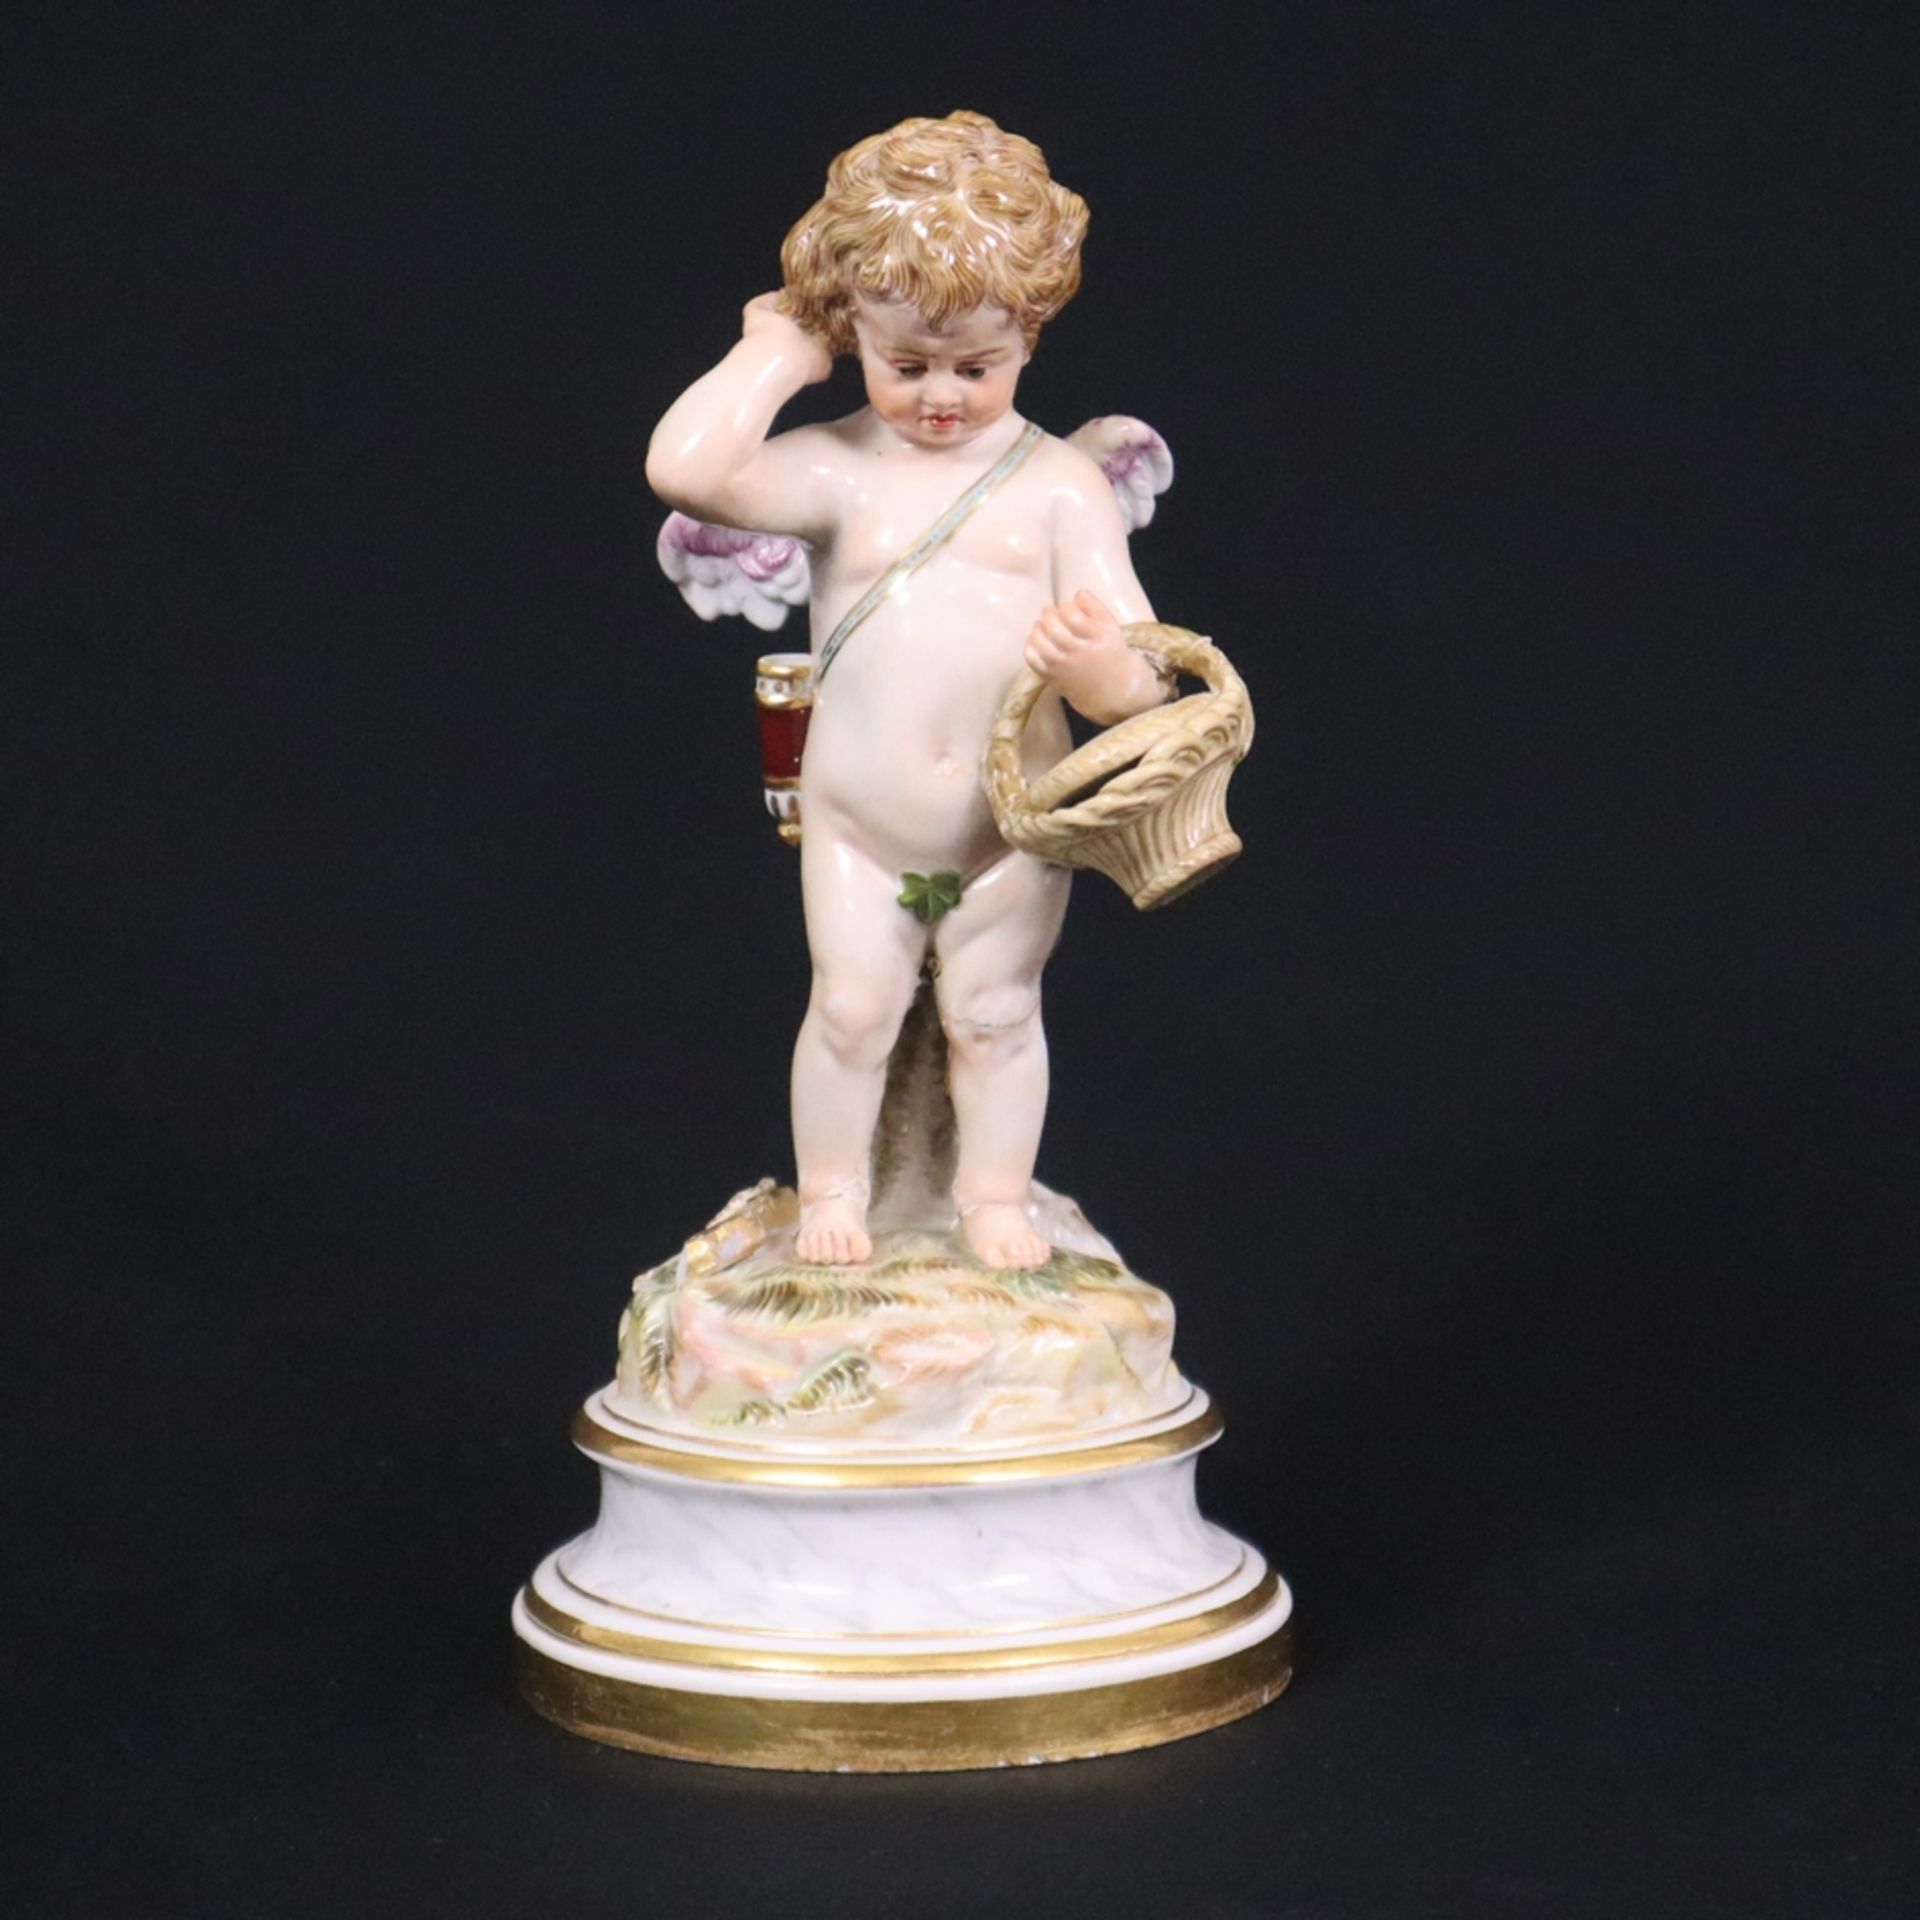 Porzellanfigur "Amor bekommt einen Korb und kratzt sich enttäuscht hinterm Ohr" - Meissen, um 1900,